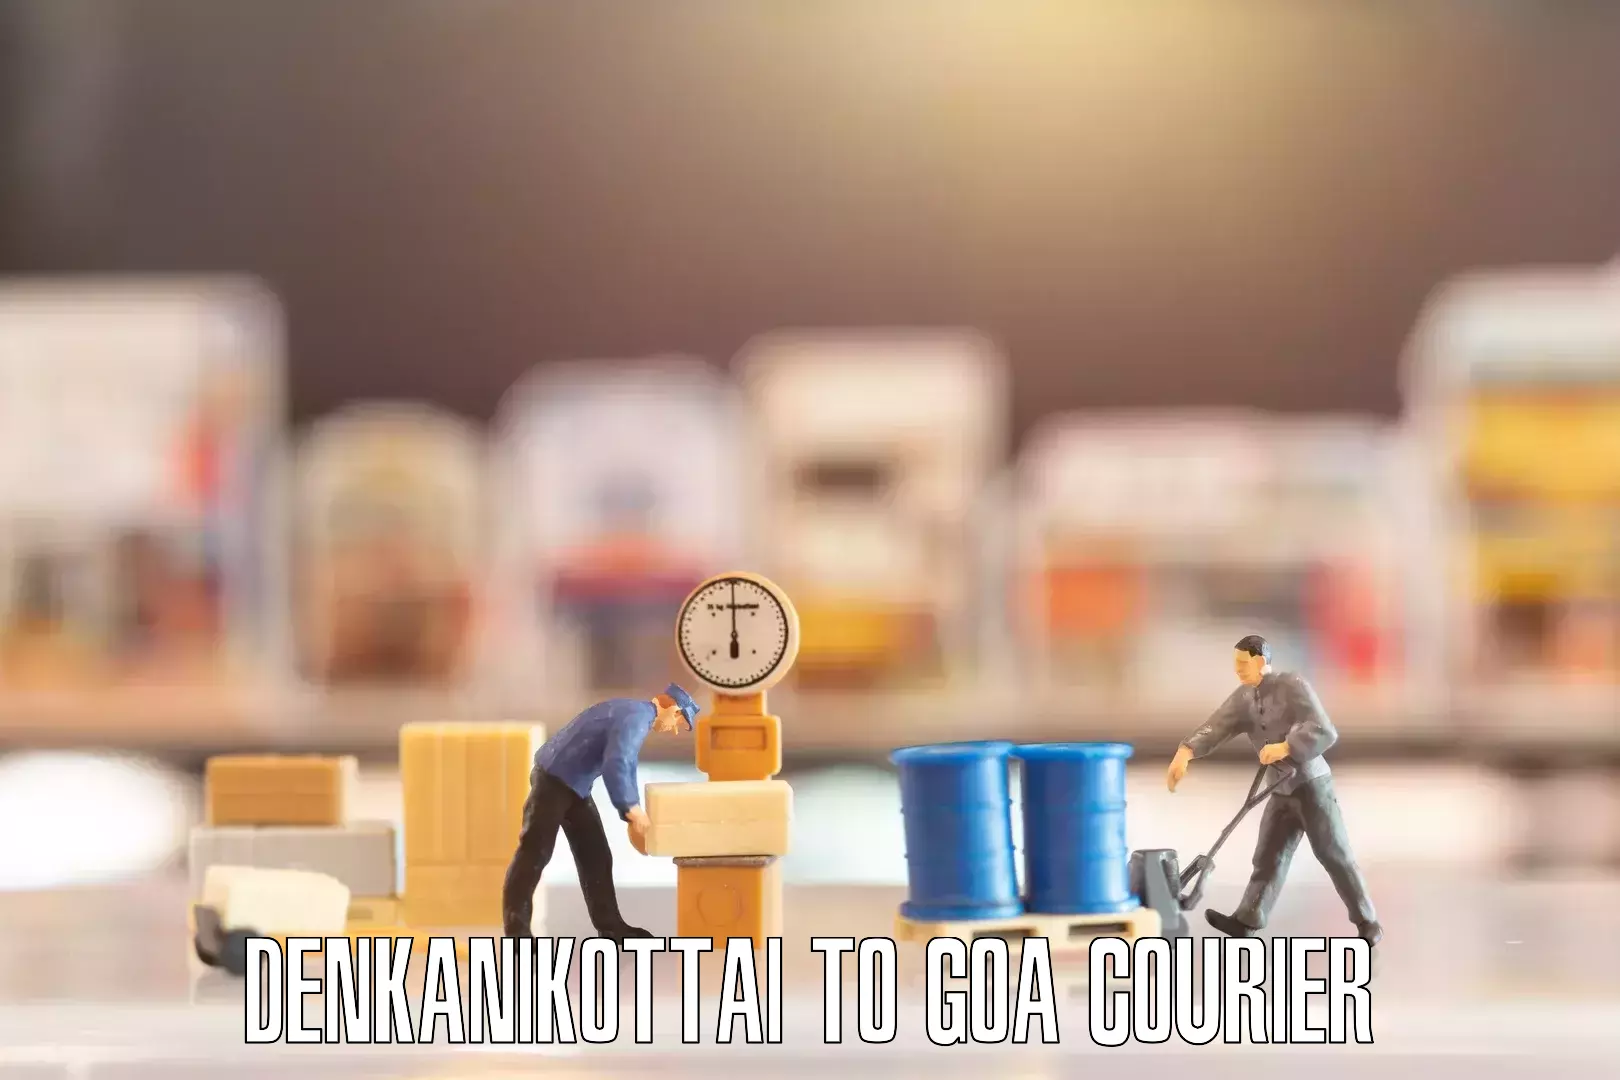 Customized furniture moving Denkanikottai to Goa